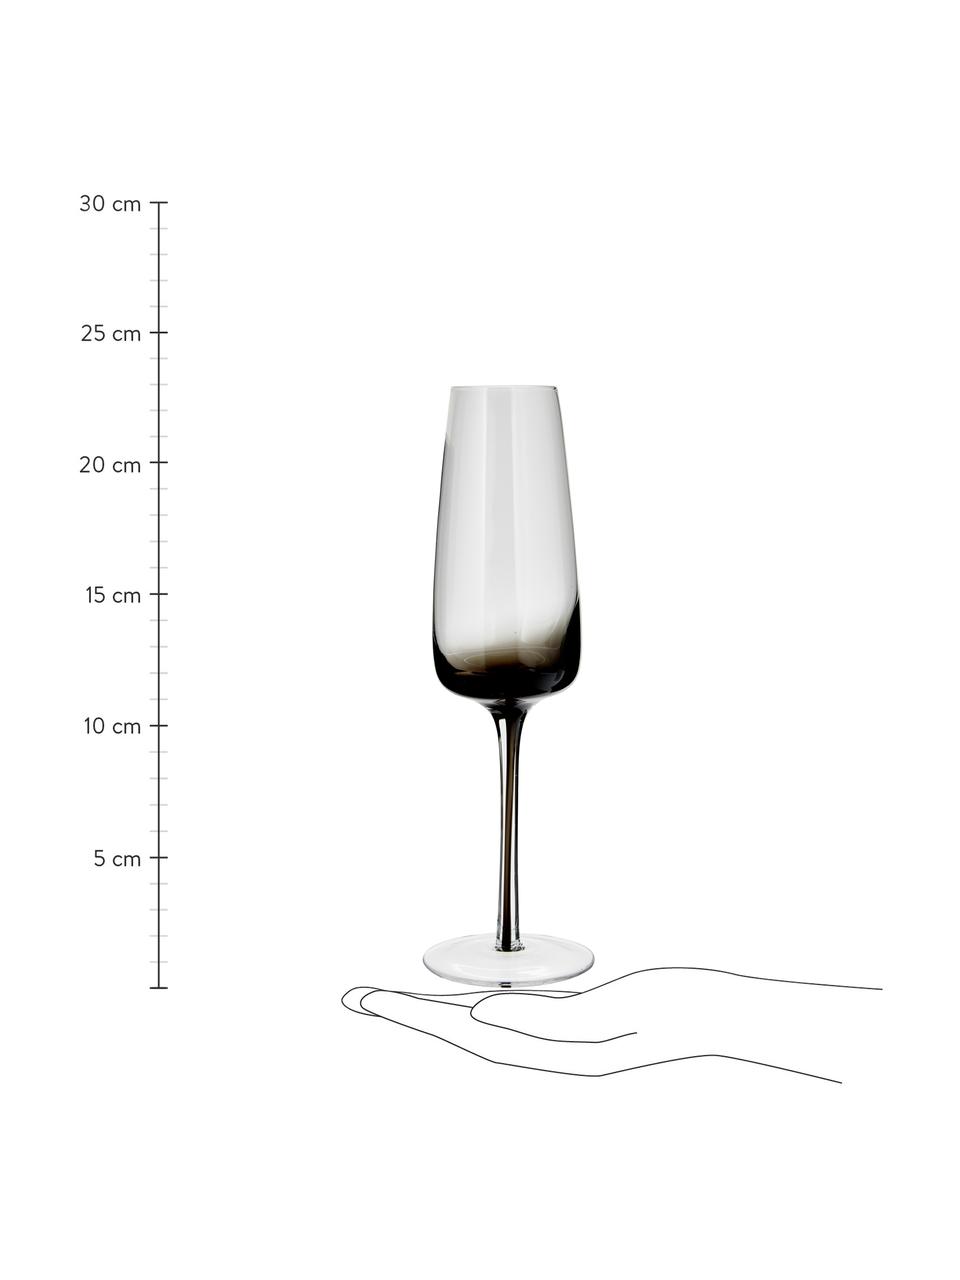 Kieliszek do szampana ze szkła dmuchanego Smoke, 4 szt., Szkło dmuchane, Transparentny, ciemny szary, Ø 7 x W 23 cm, 200 ml